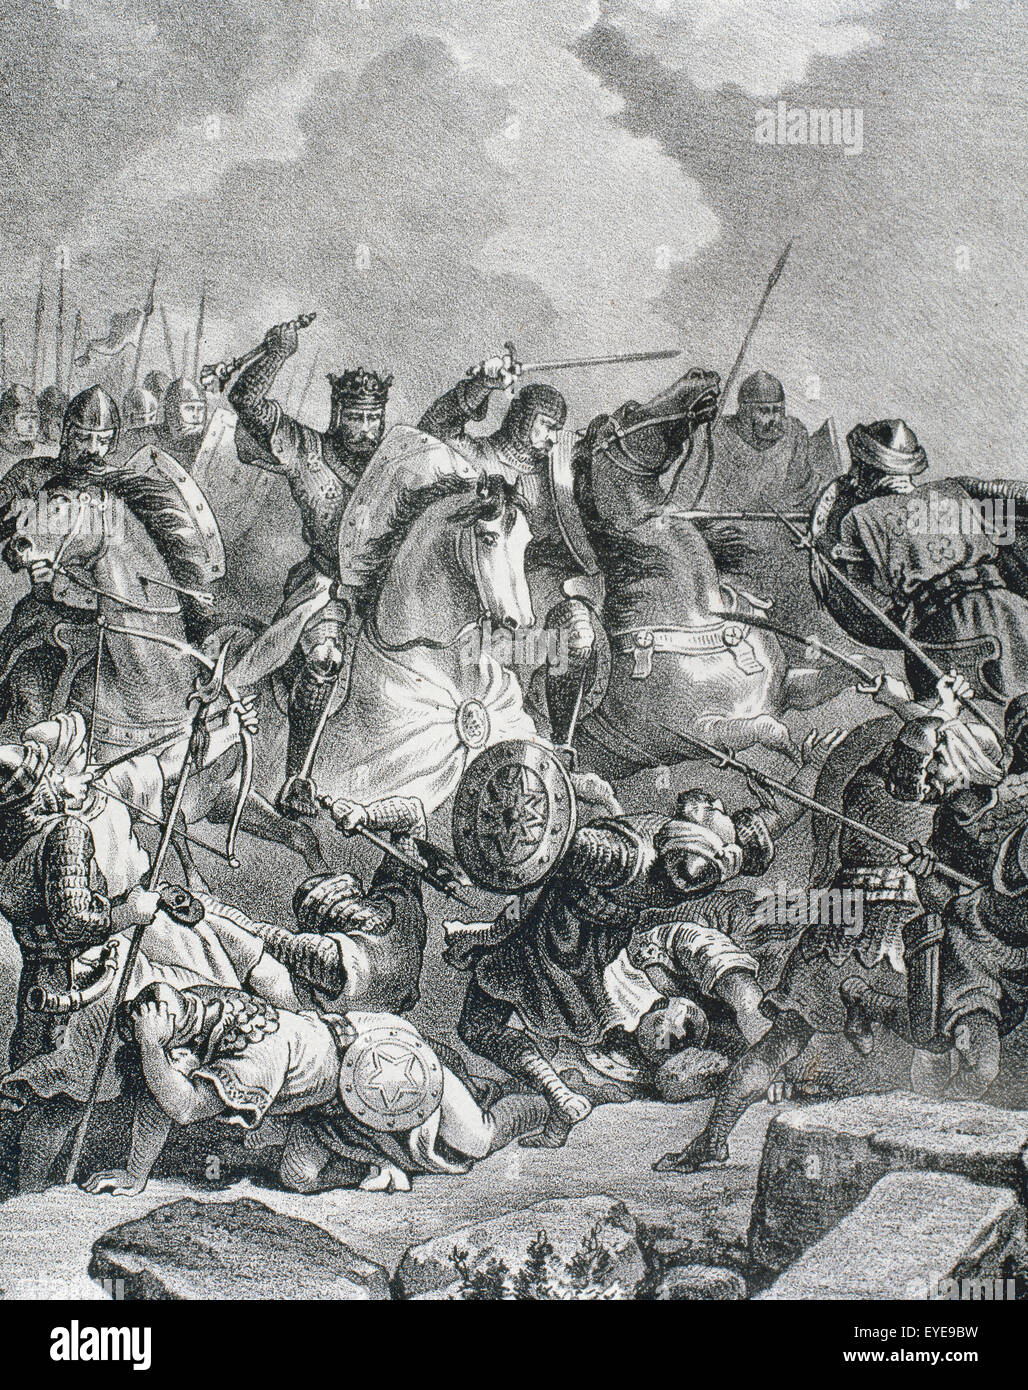 Histoire de l'Espagne. Bataille de la Rivière Salado (30 octobre 1340). Gravure, 19ème siècle. Banque D'Images